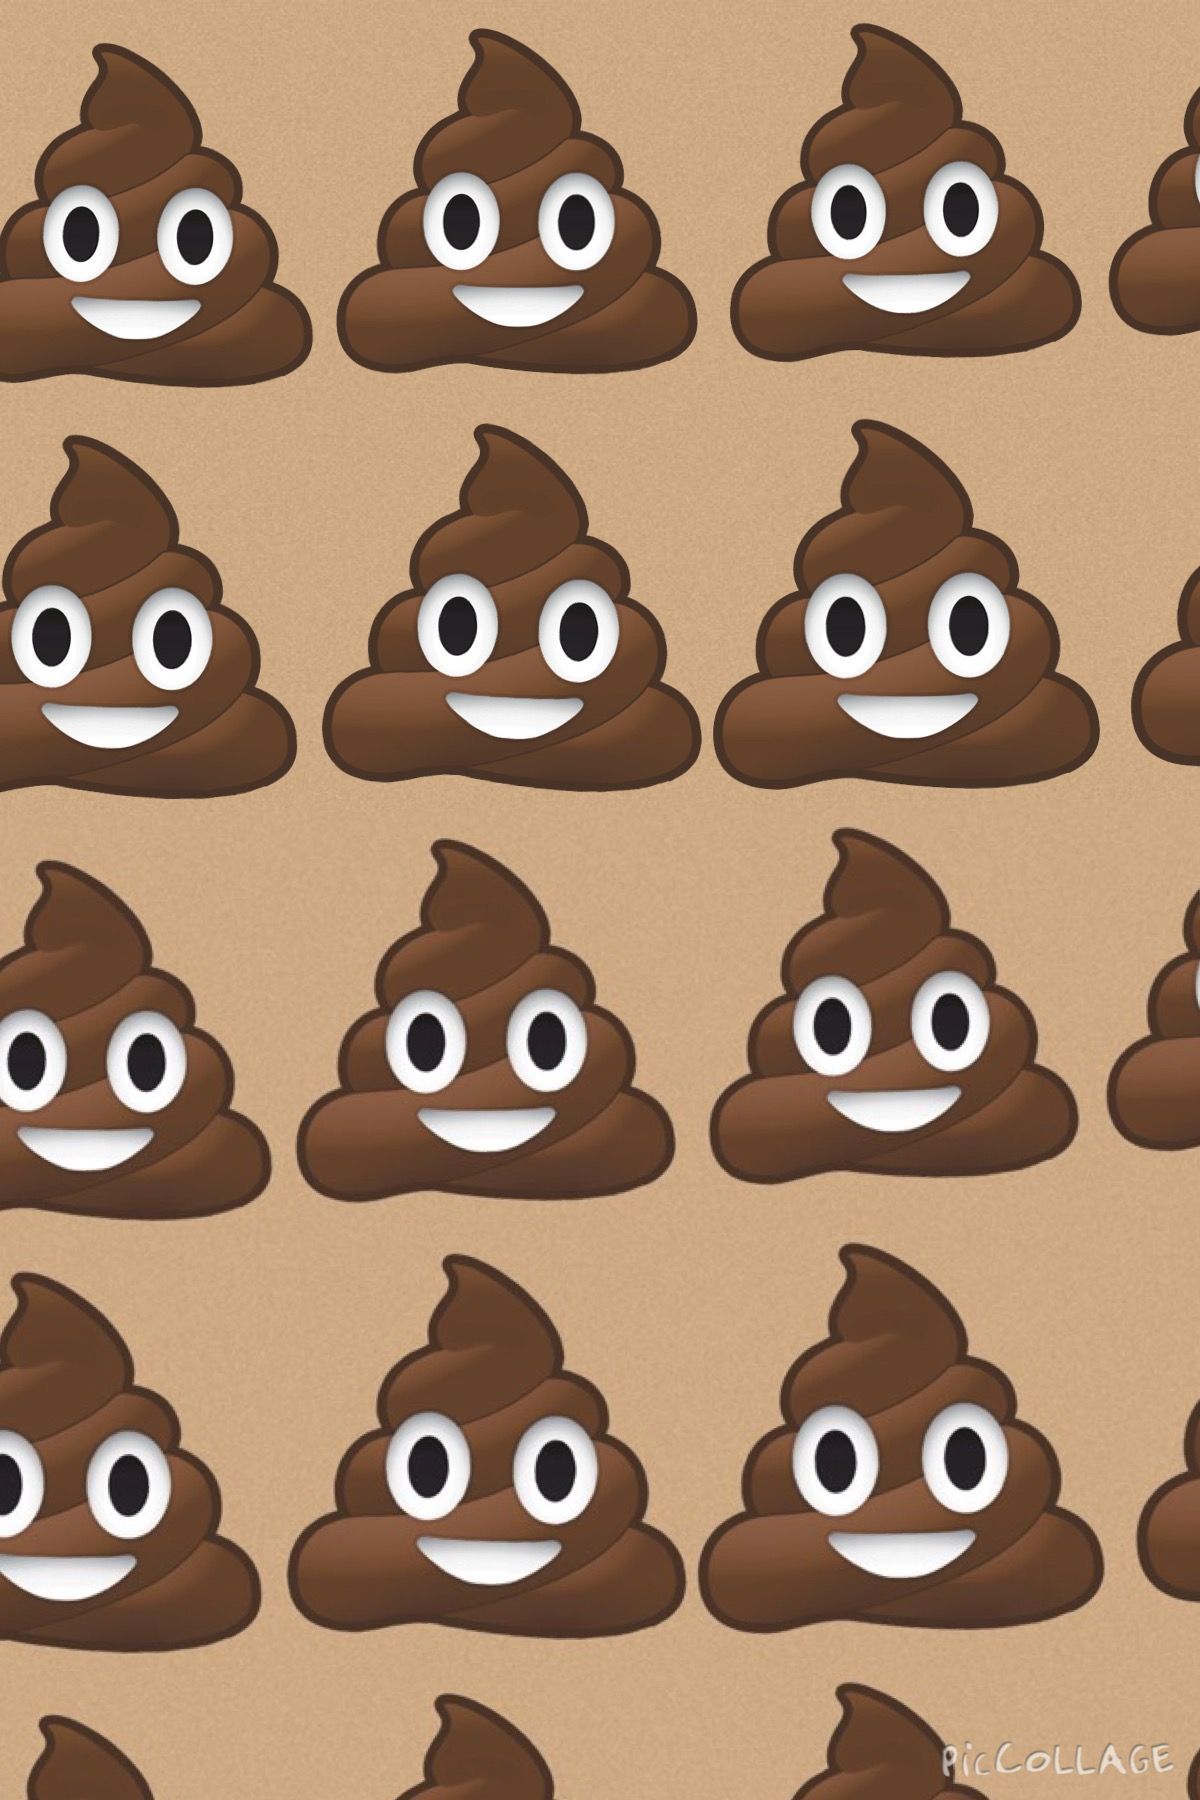 Poop Emoji Wallpaper Free Poop Emoji Background